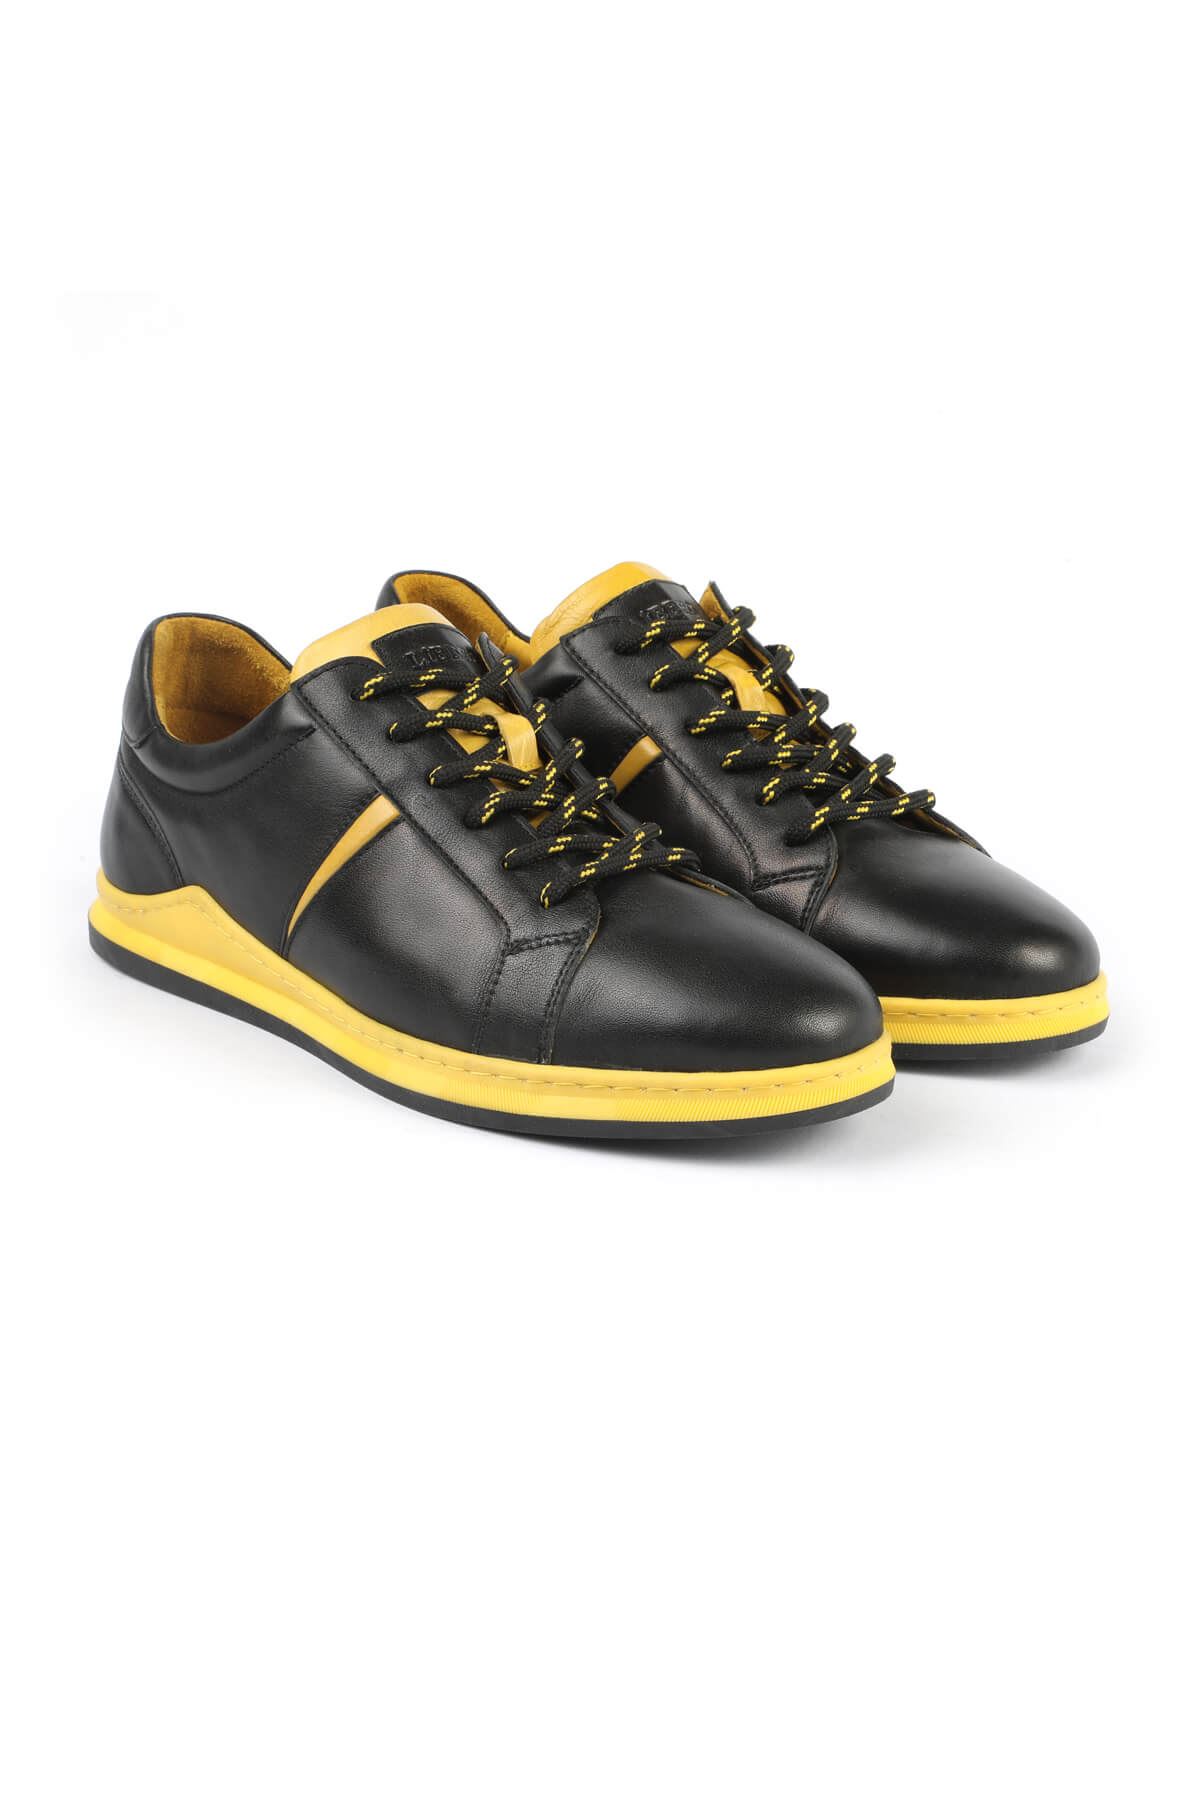 Libero 3196 Black Yellow Sneaker Shoes